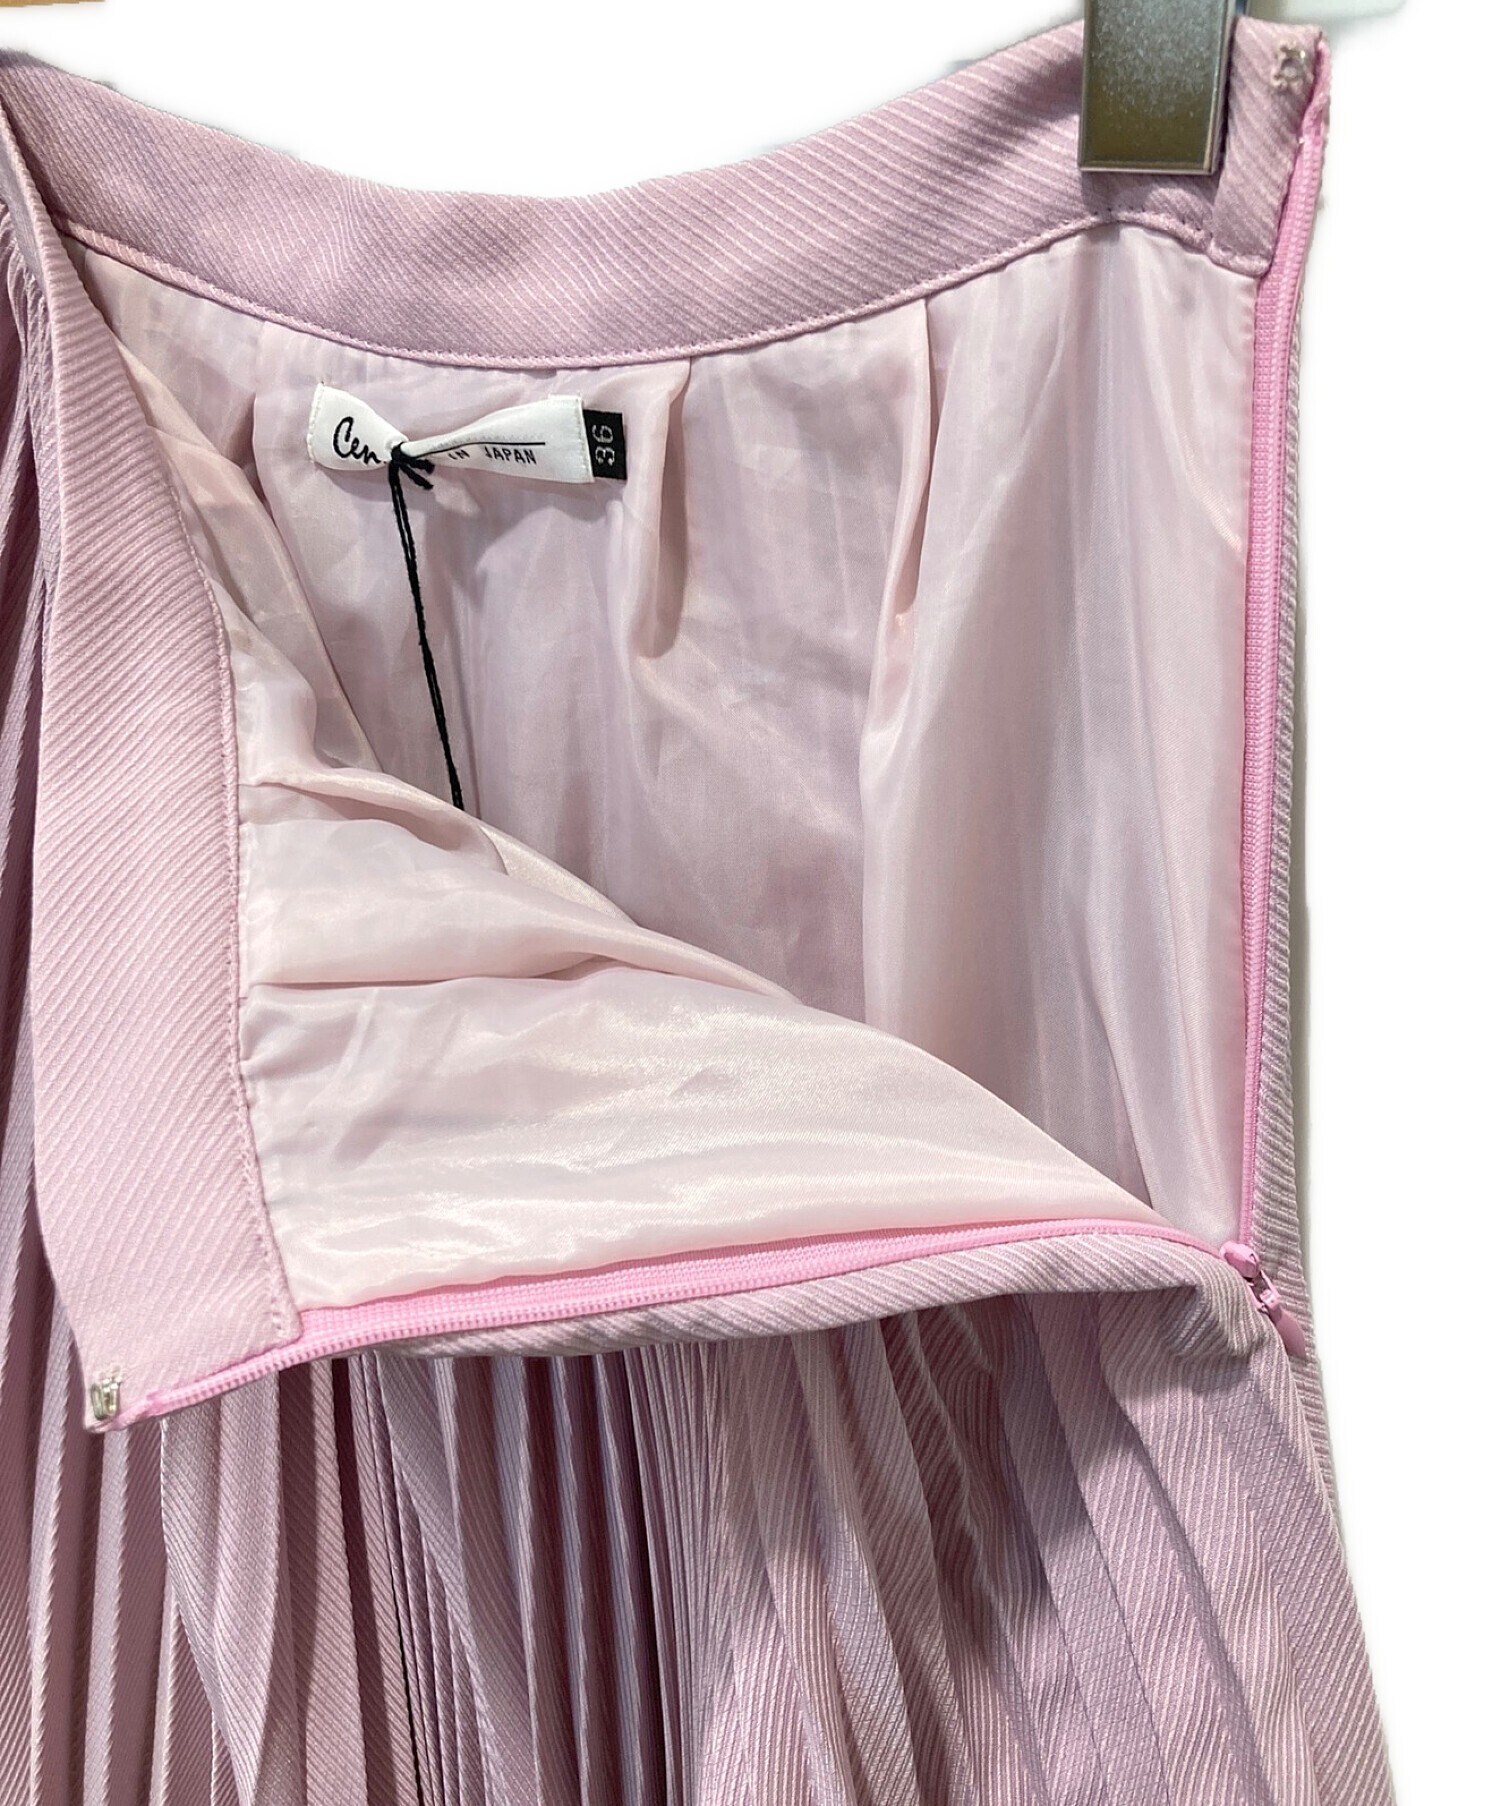 10,400円バレンチノ プリーツスカート 36サイズ